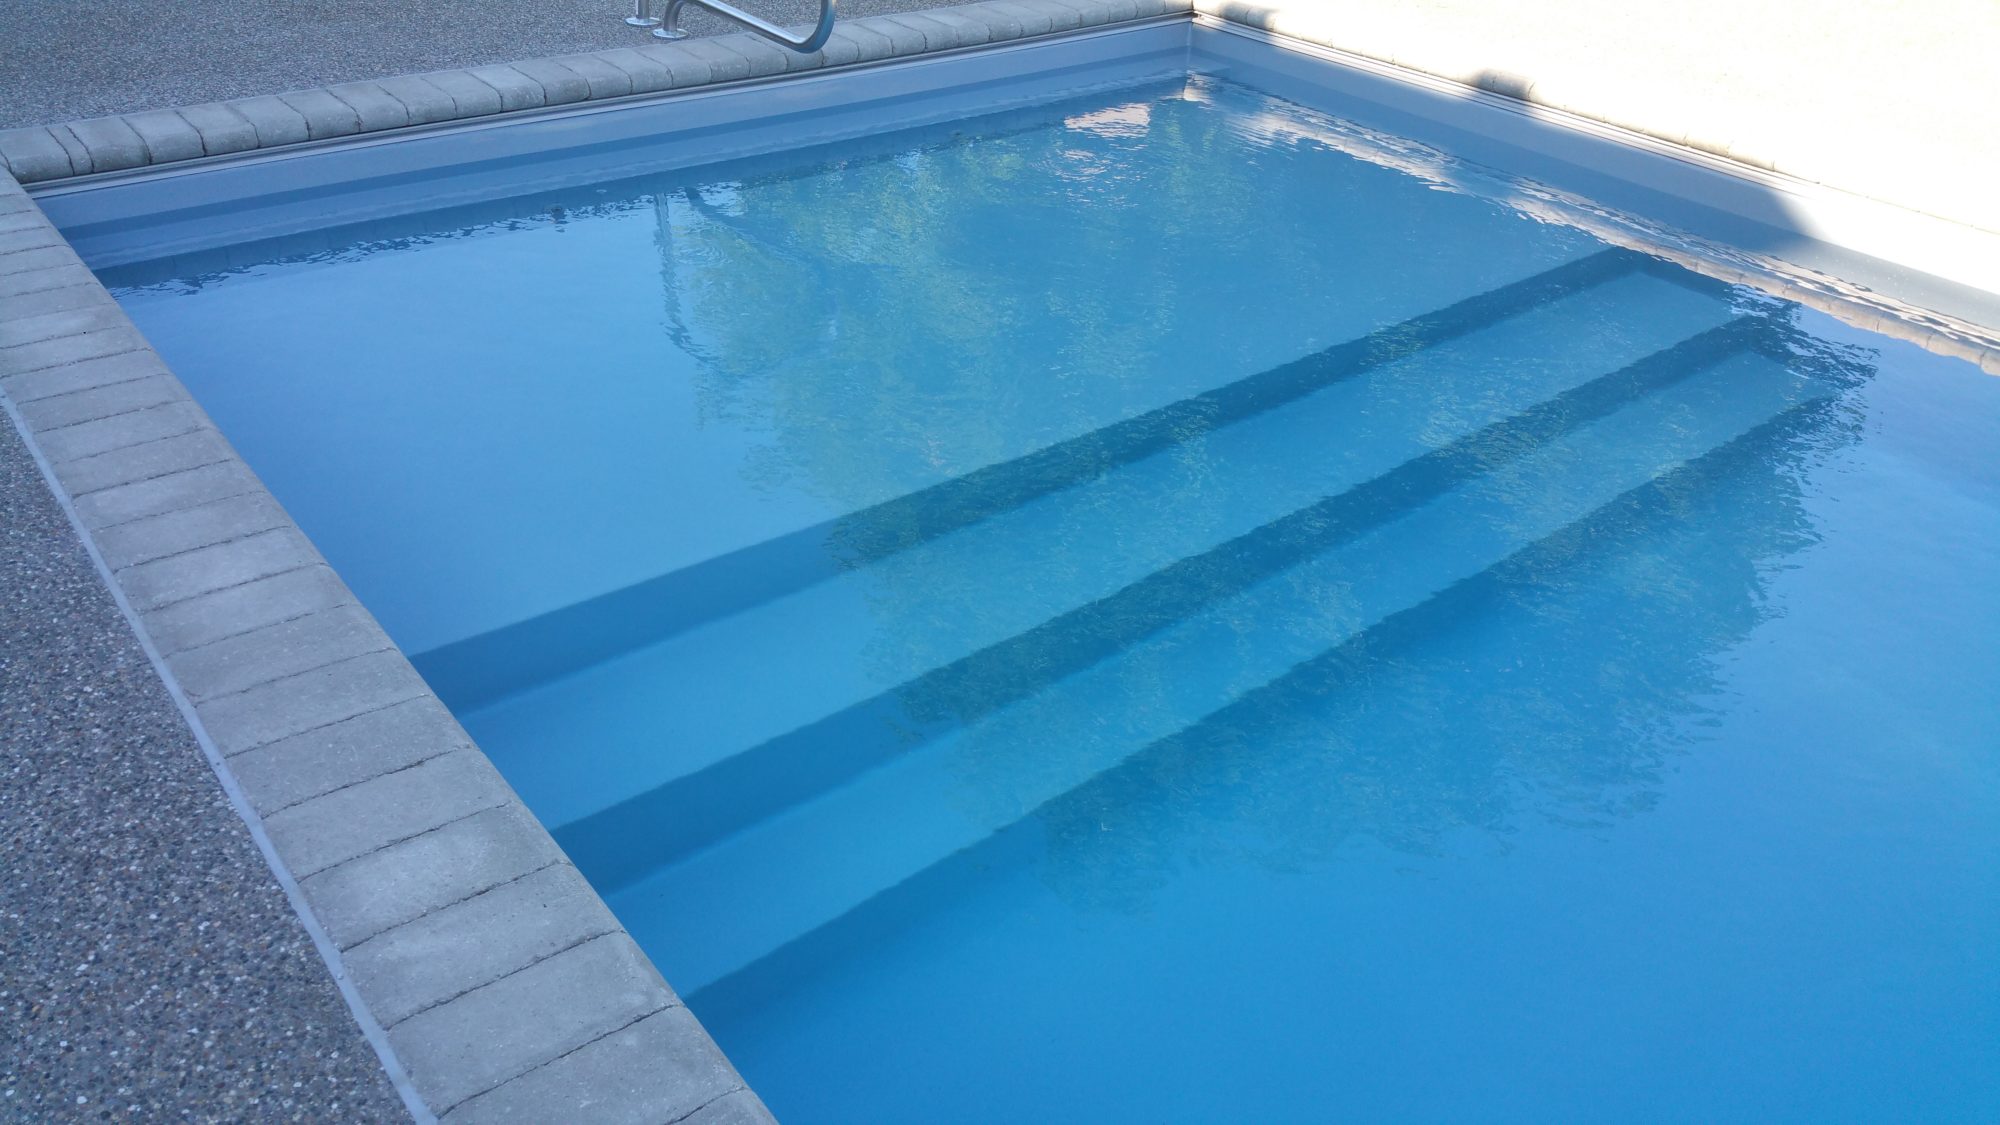 Leisure fiberglass pool. 48380